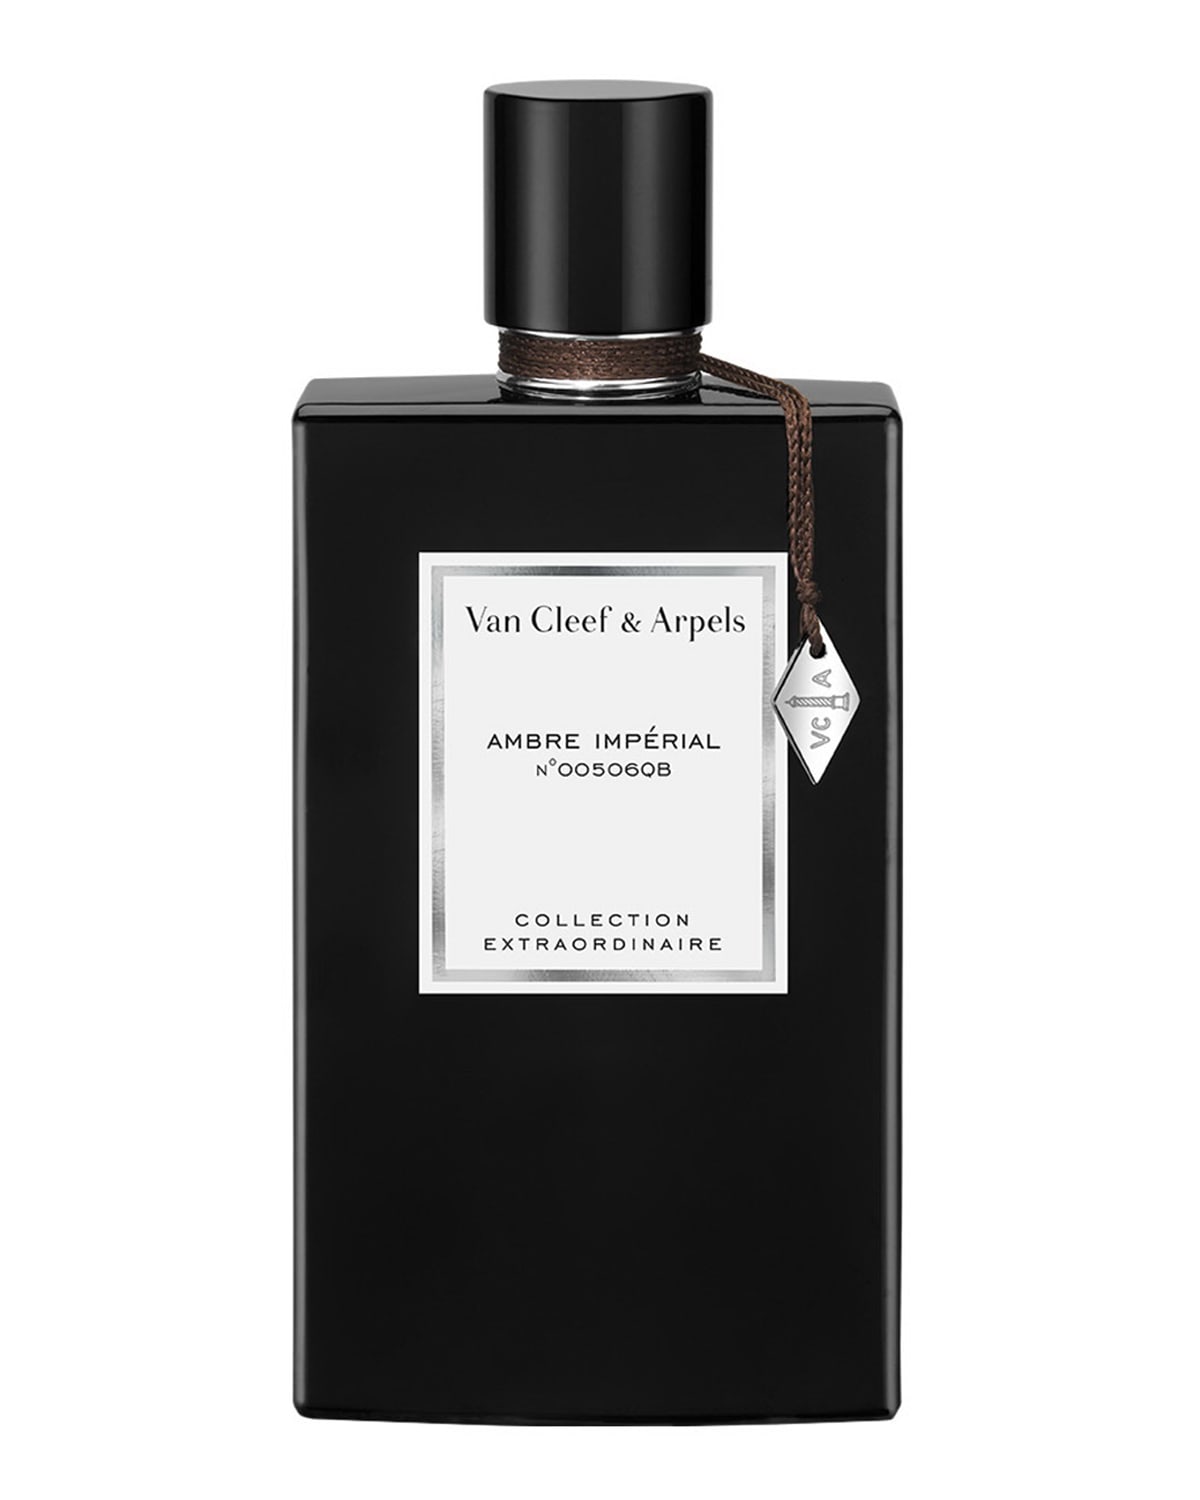 2.5 oz. Van Cleef & Arpels Collection Extraordinaire Ambre Imperial Eau de Parfum